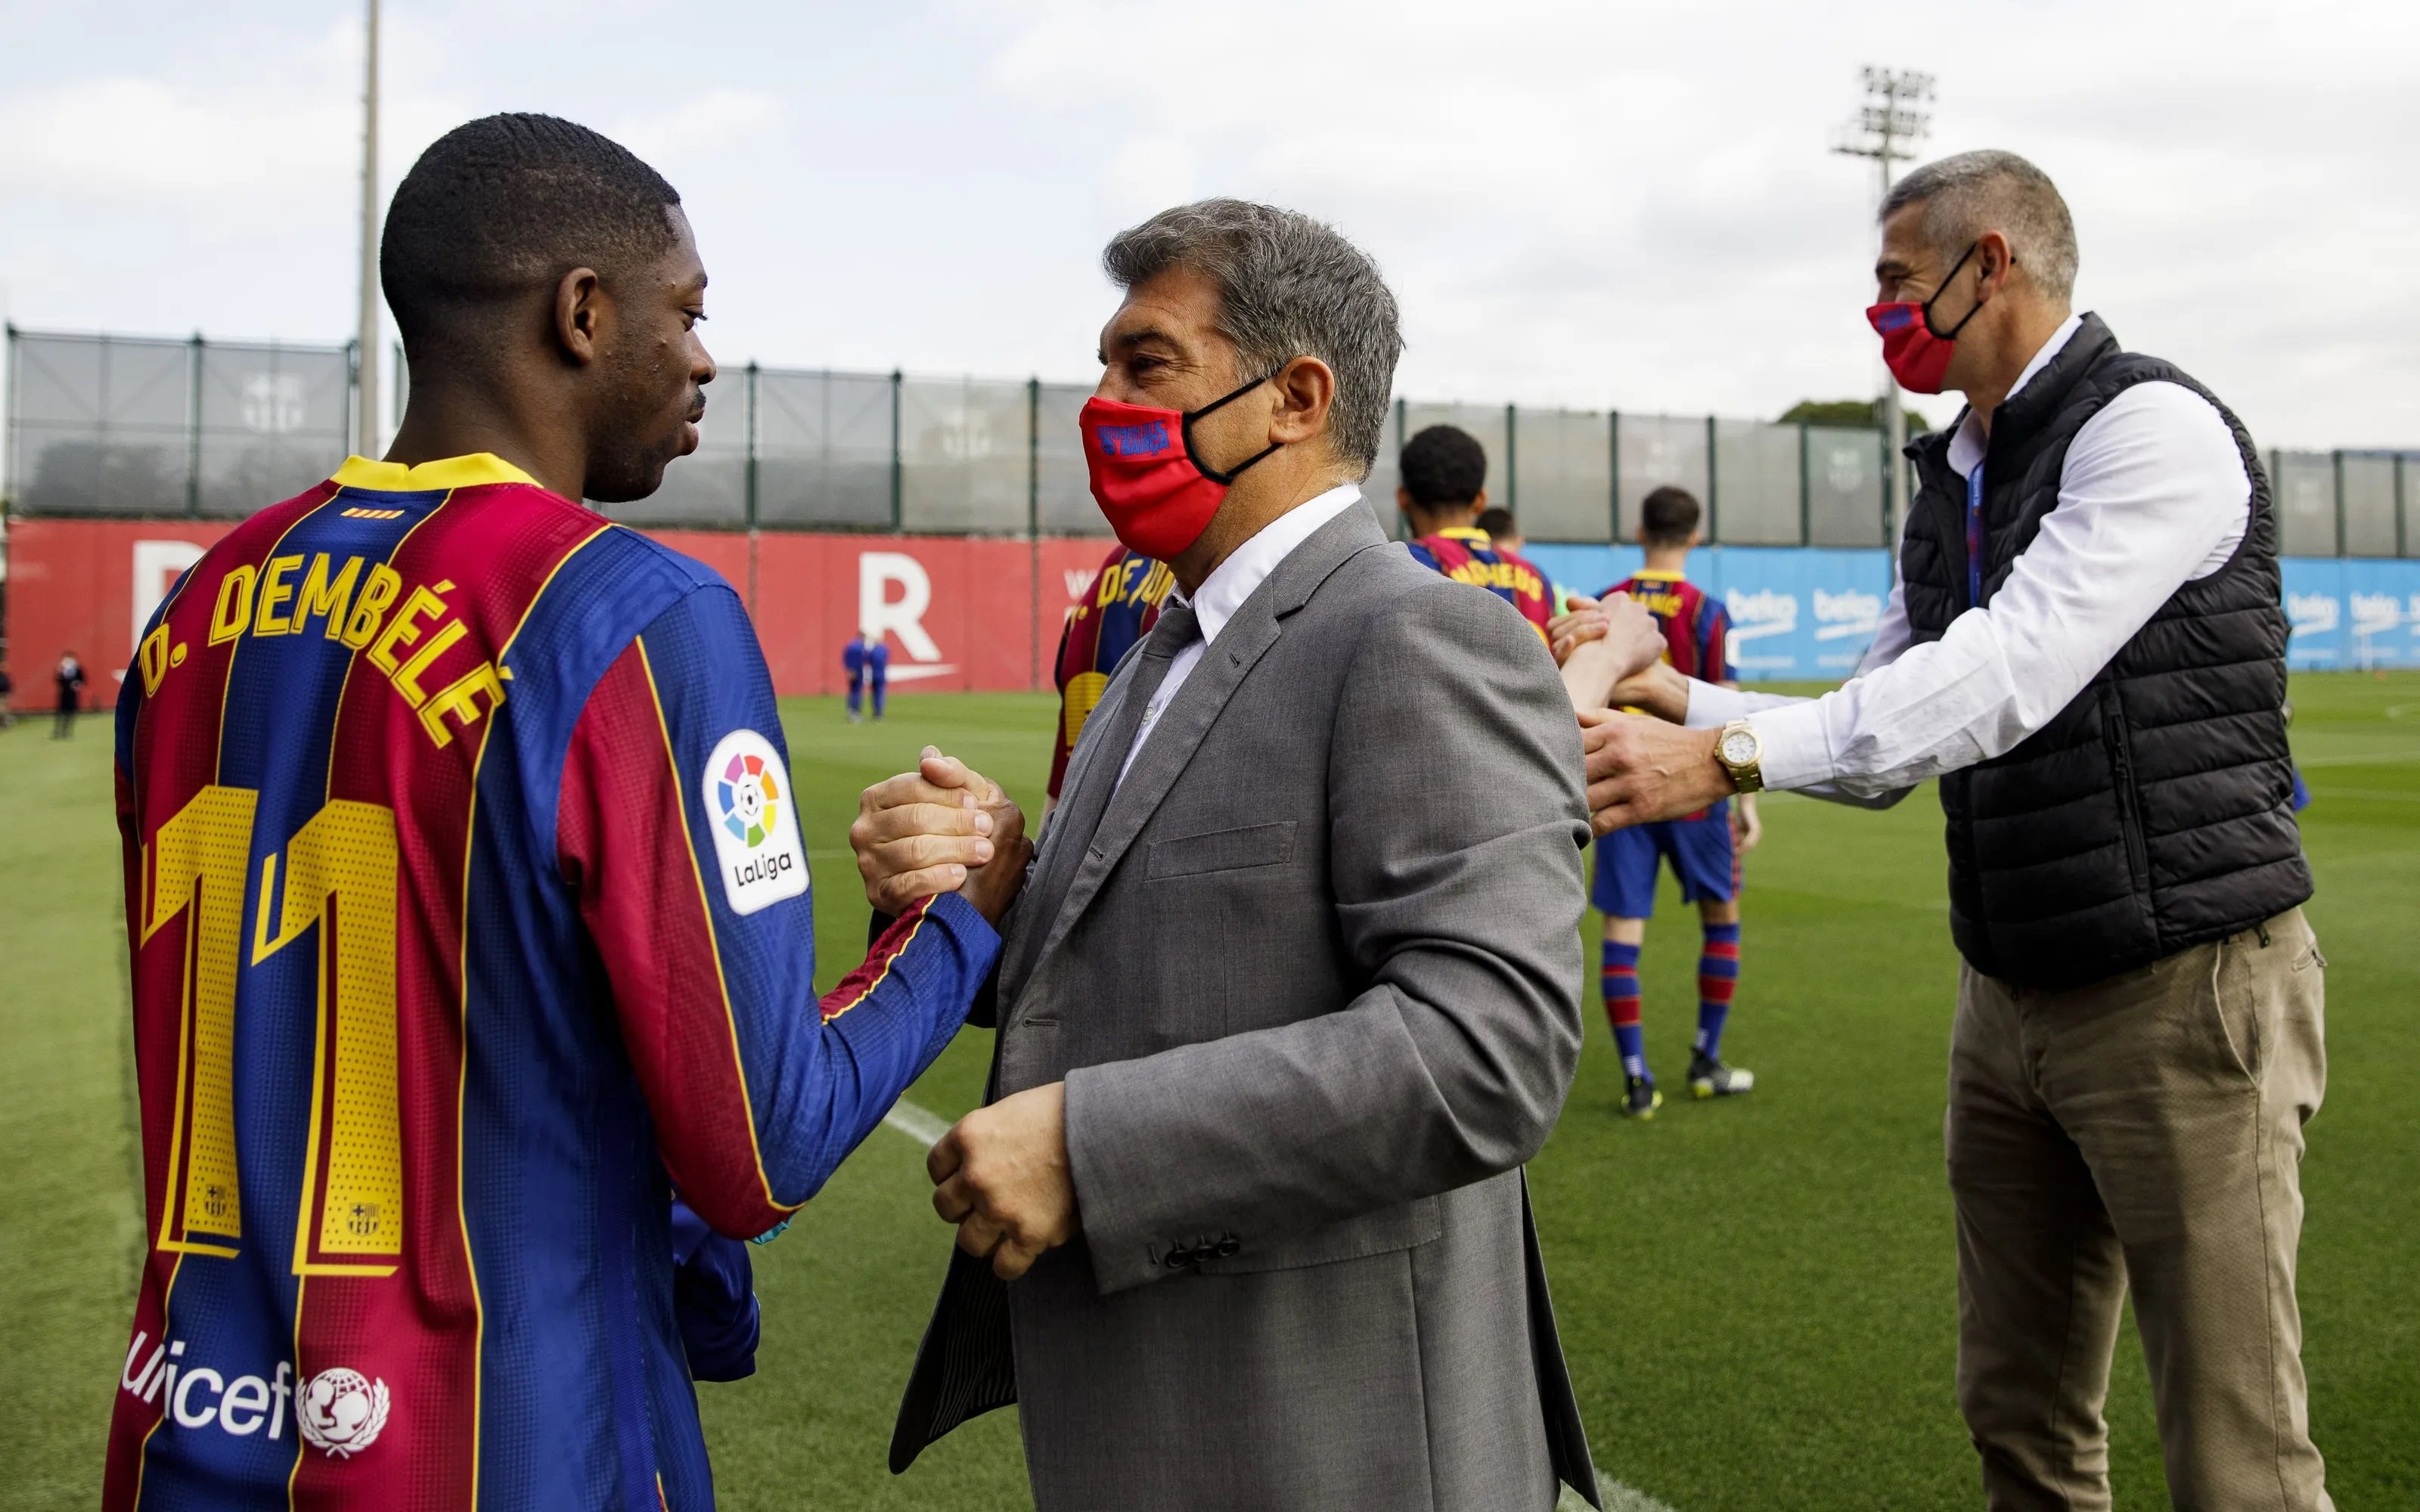 Cerrado, as en la manga de Joan Laporta pilla fuera de juego a Dembélé, nuevo tridente en el Barça